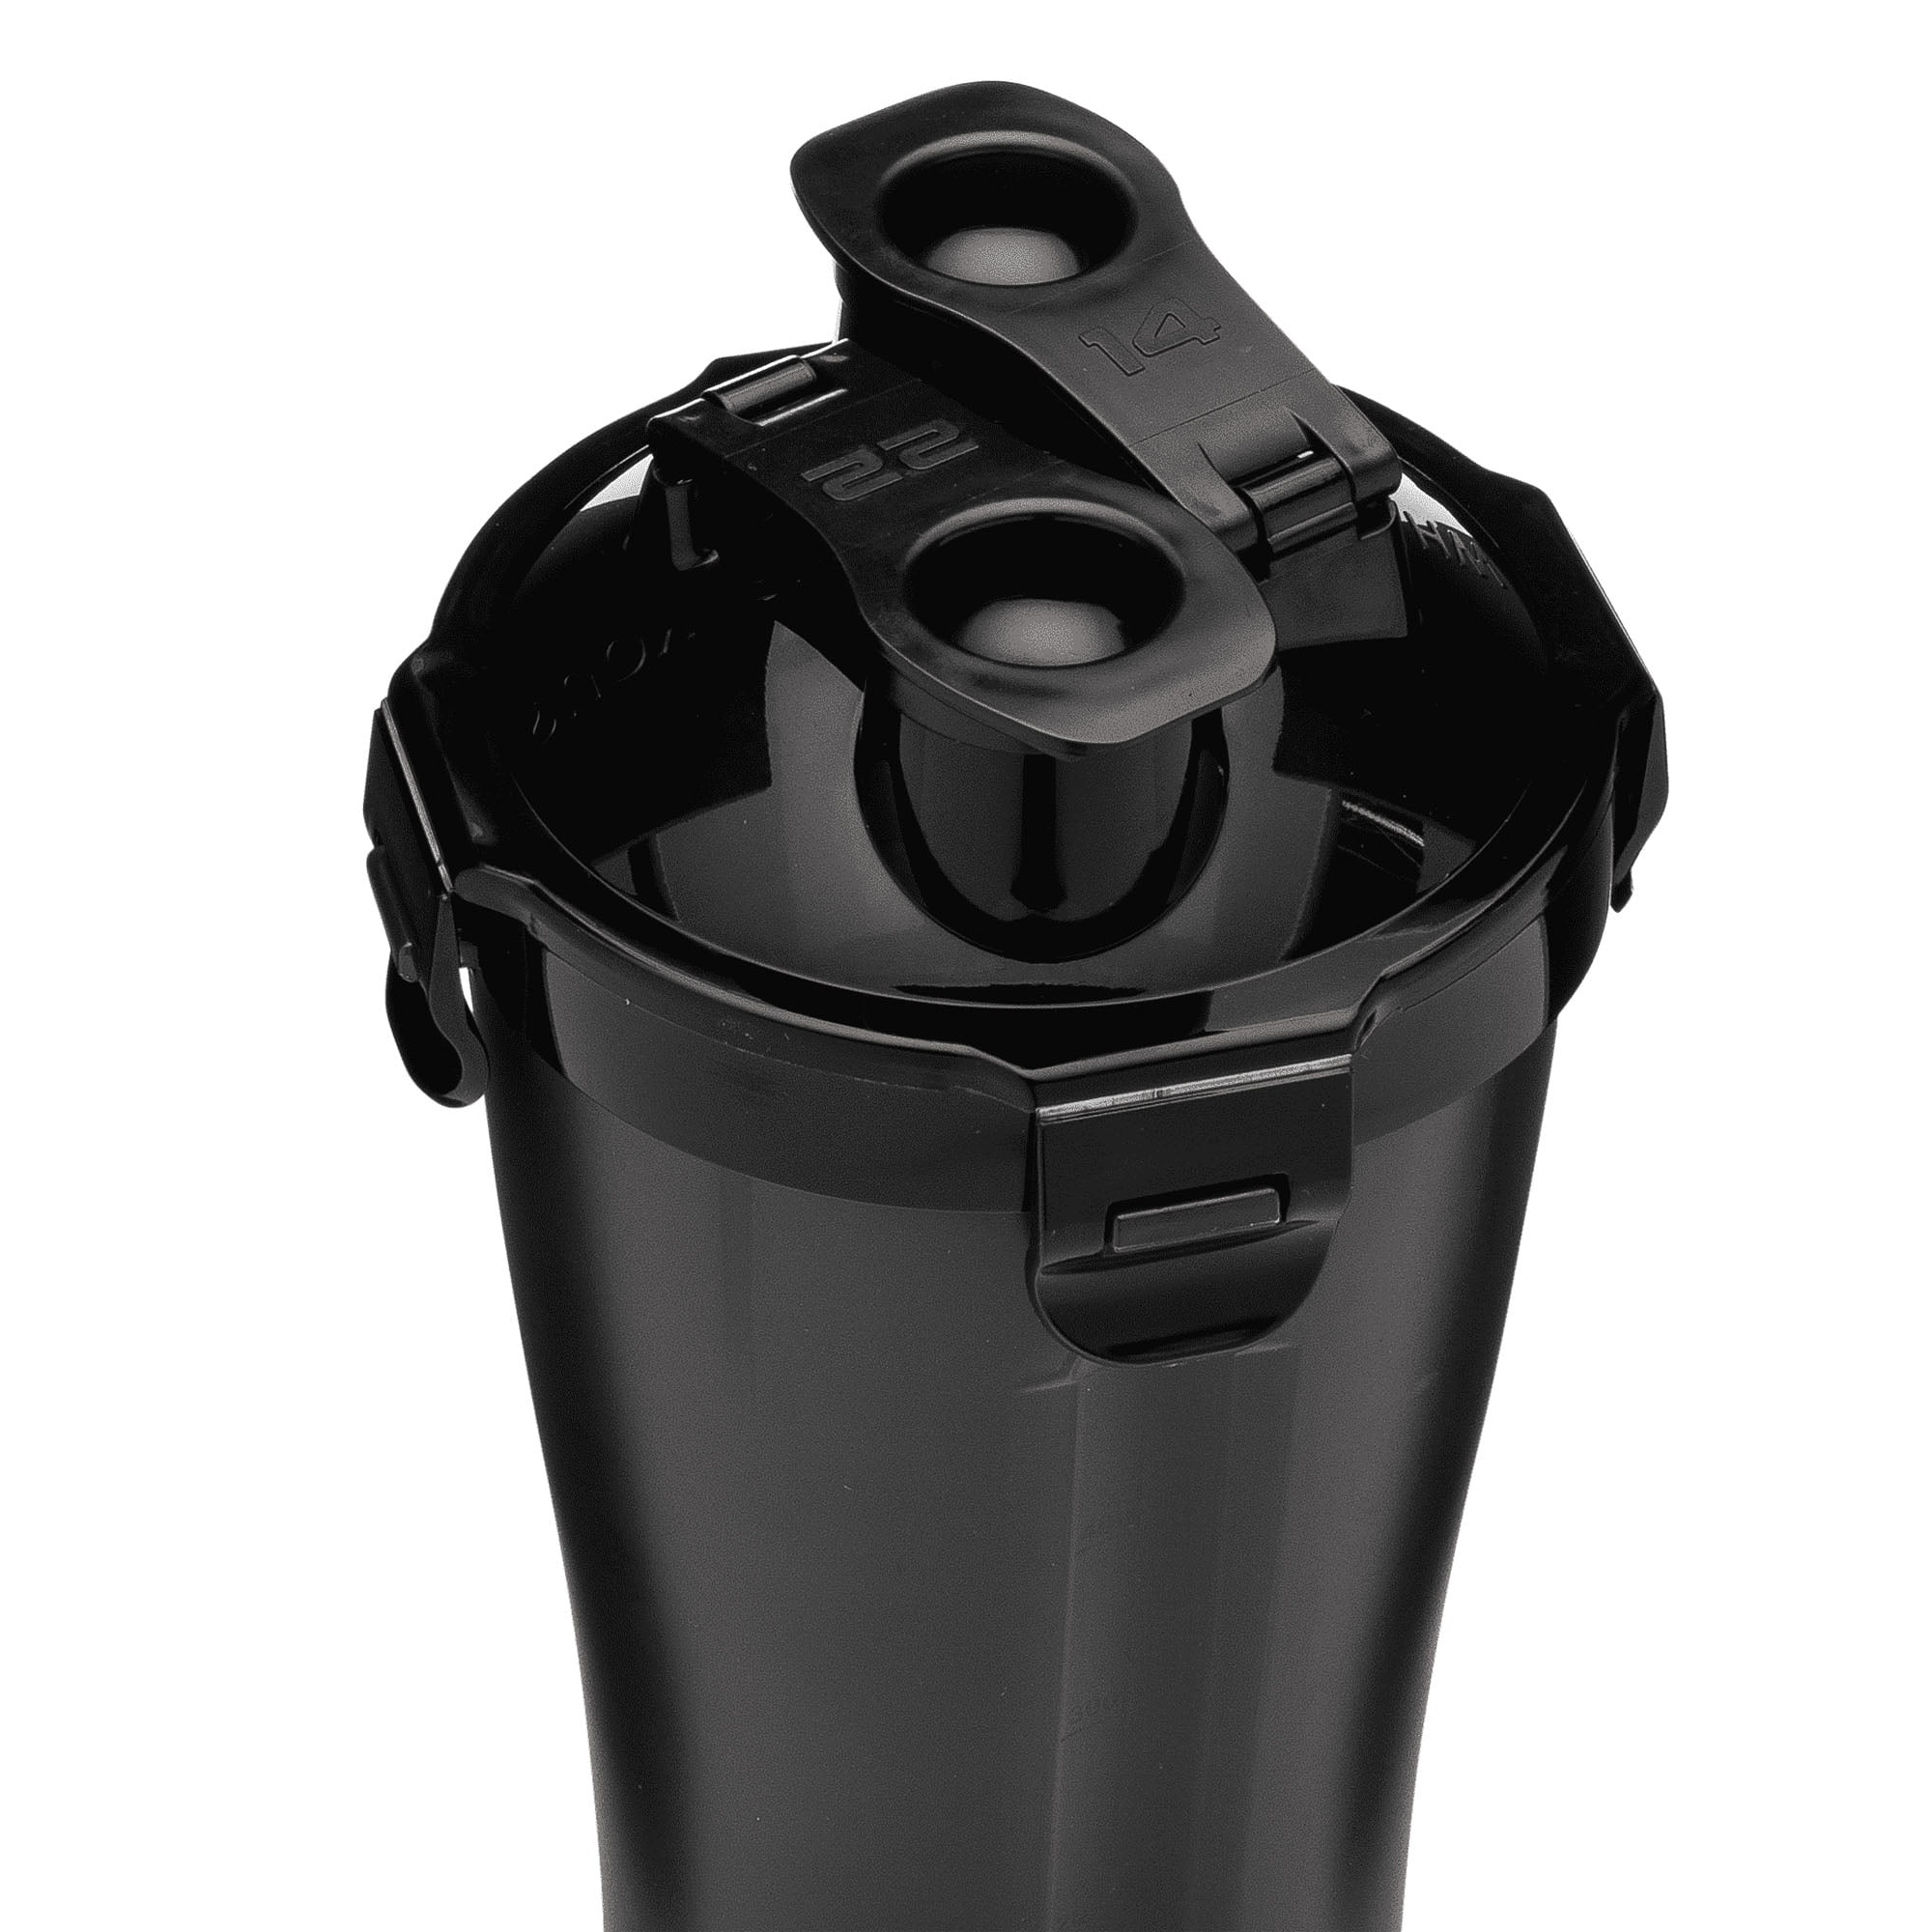 28oz Shaker Bottle – Hydracup Dual Shaker